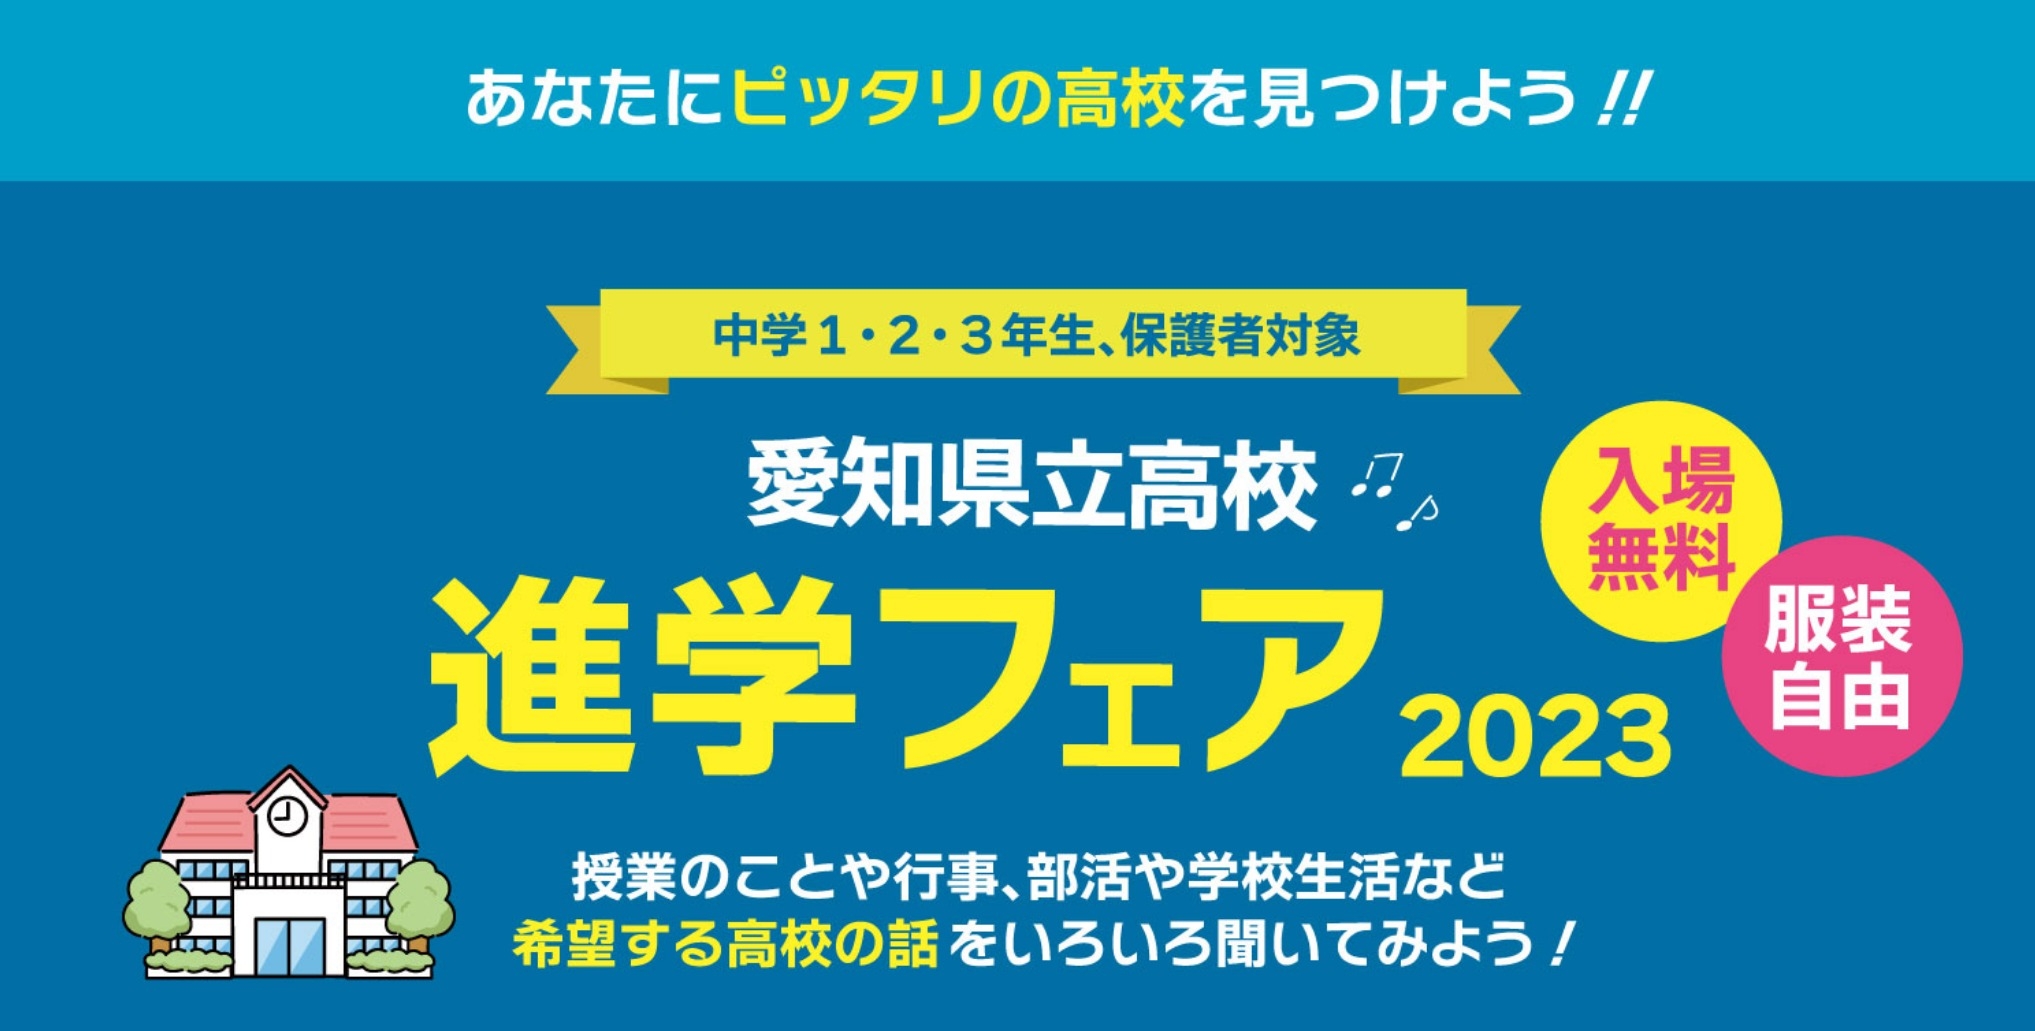 【高校受験】愛知県立高校進学フェアの開催